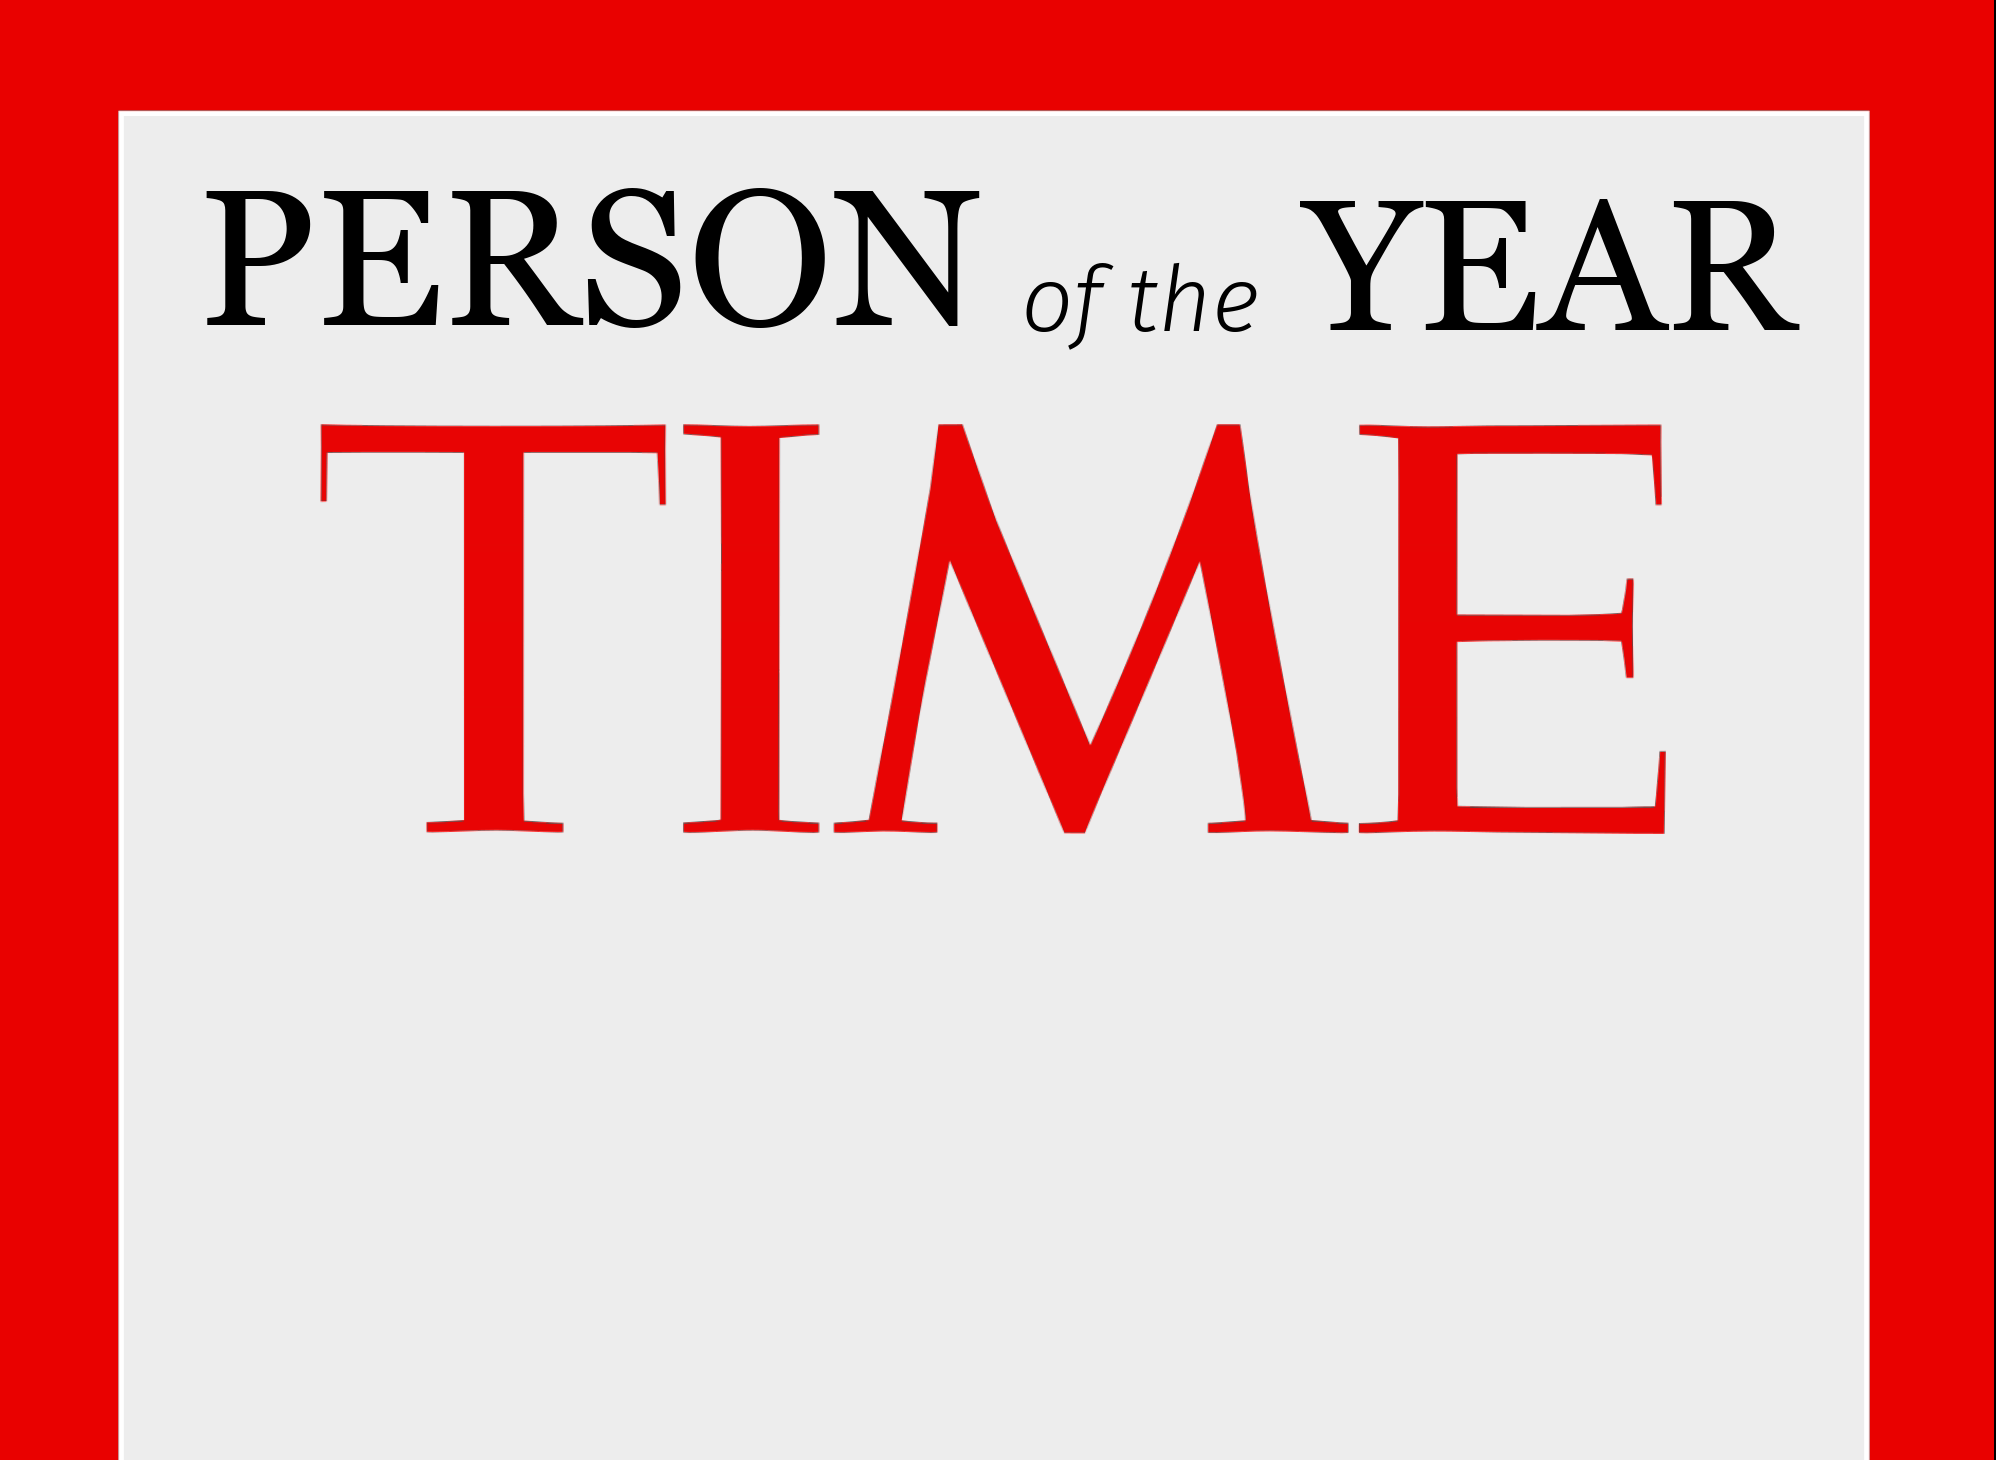 Περιοδικό TIME - Πρόσωπο της Χρονιάς ο Ίλον Μασκ